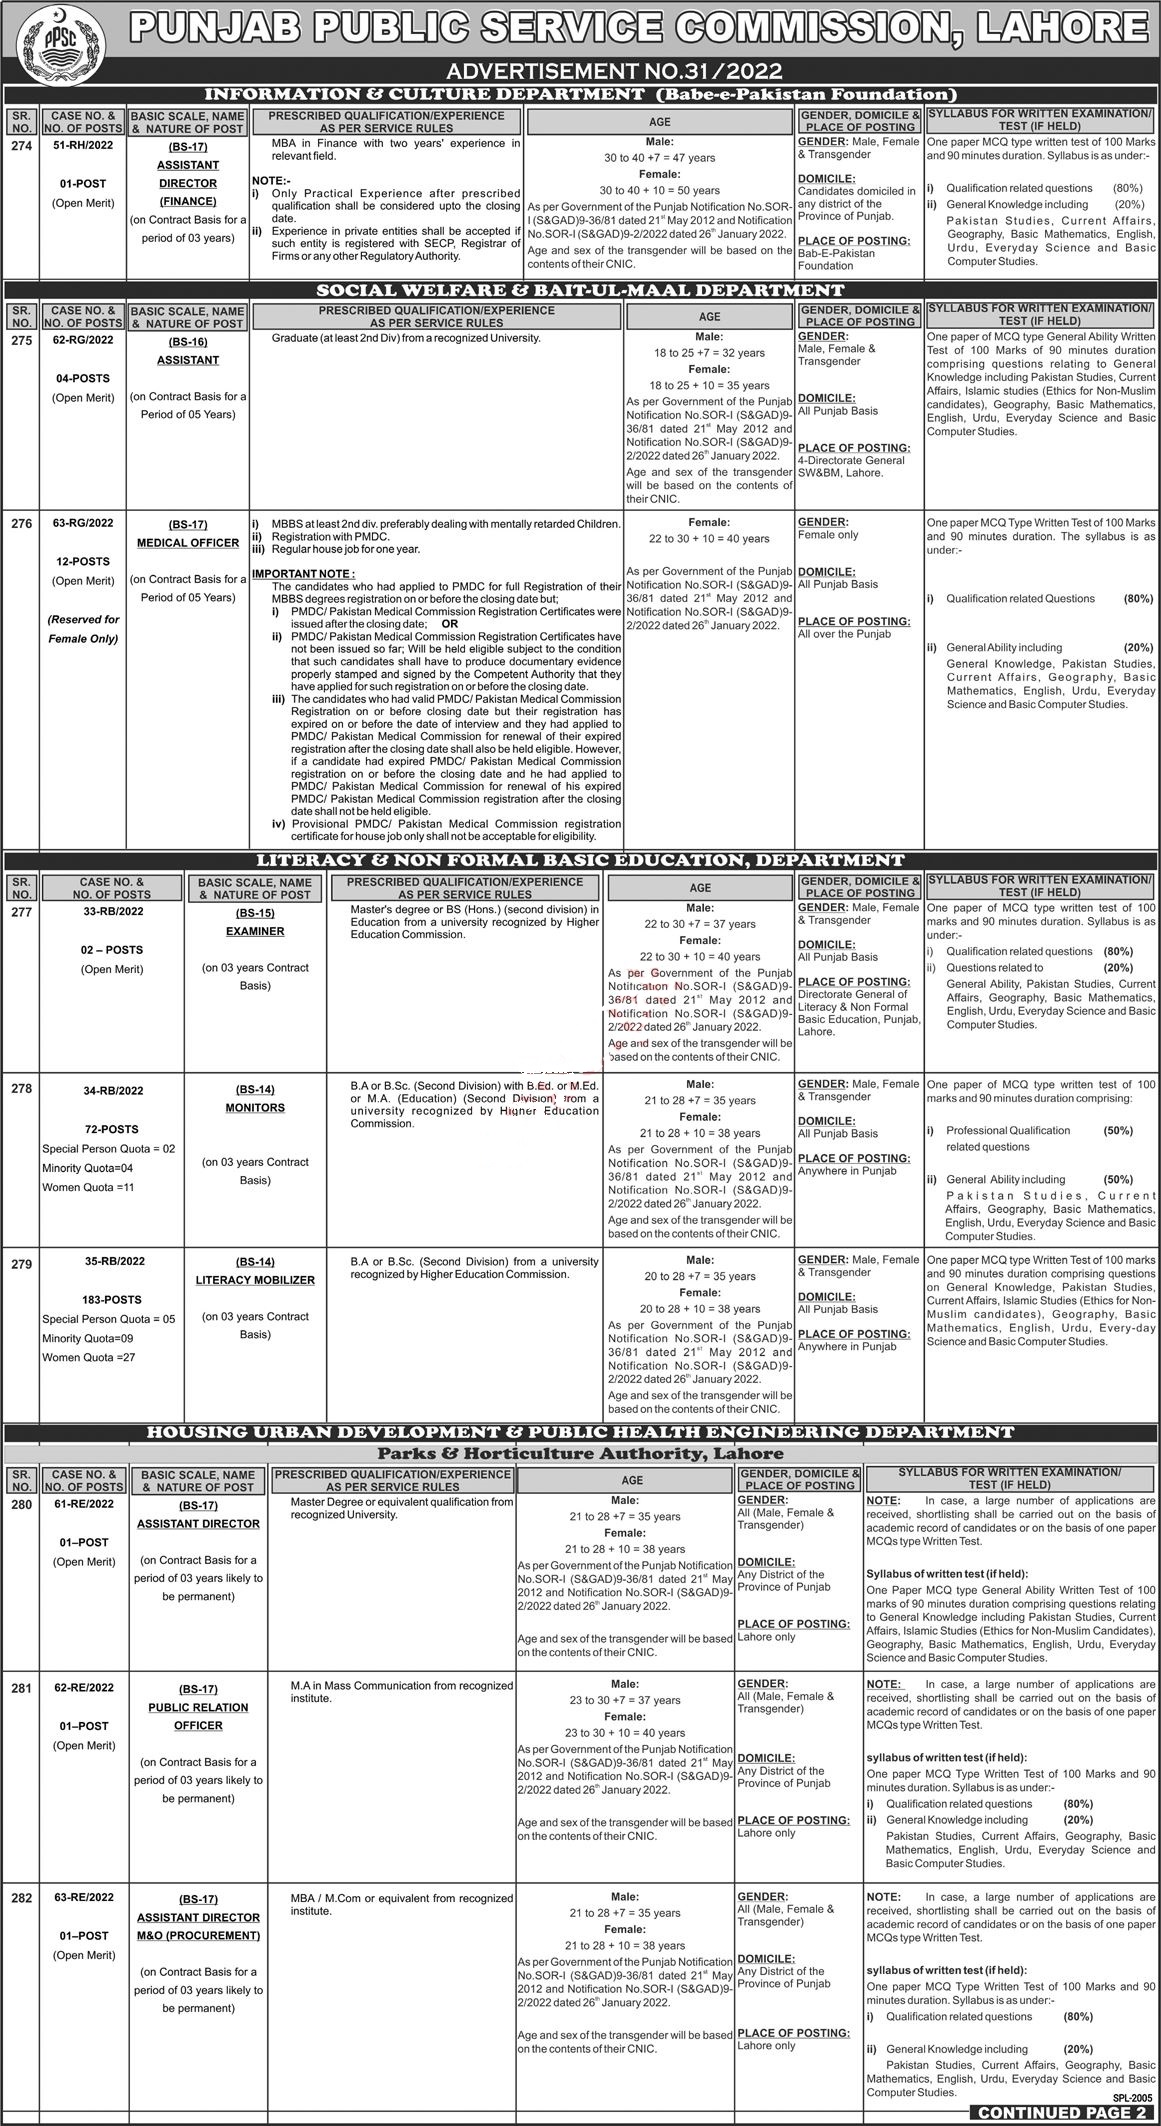 PPSC Jobs 2022 | Punjab Public Service Commission Headquarters Announced Latest Recruitments